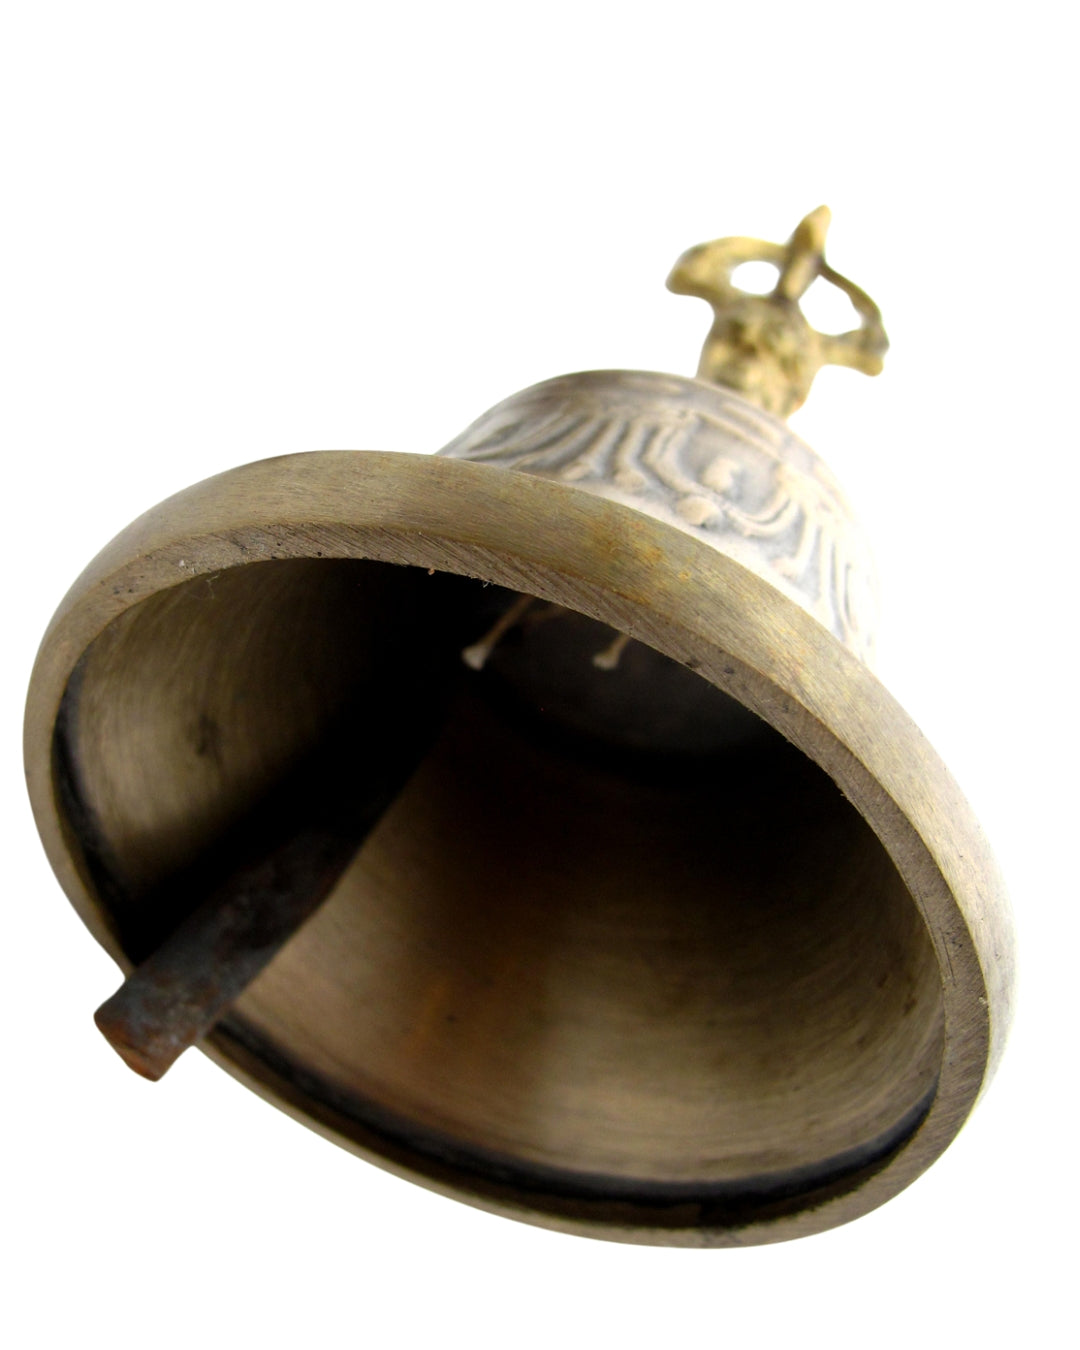 Tibetan Brass Bell